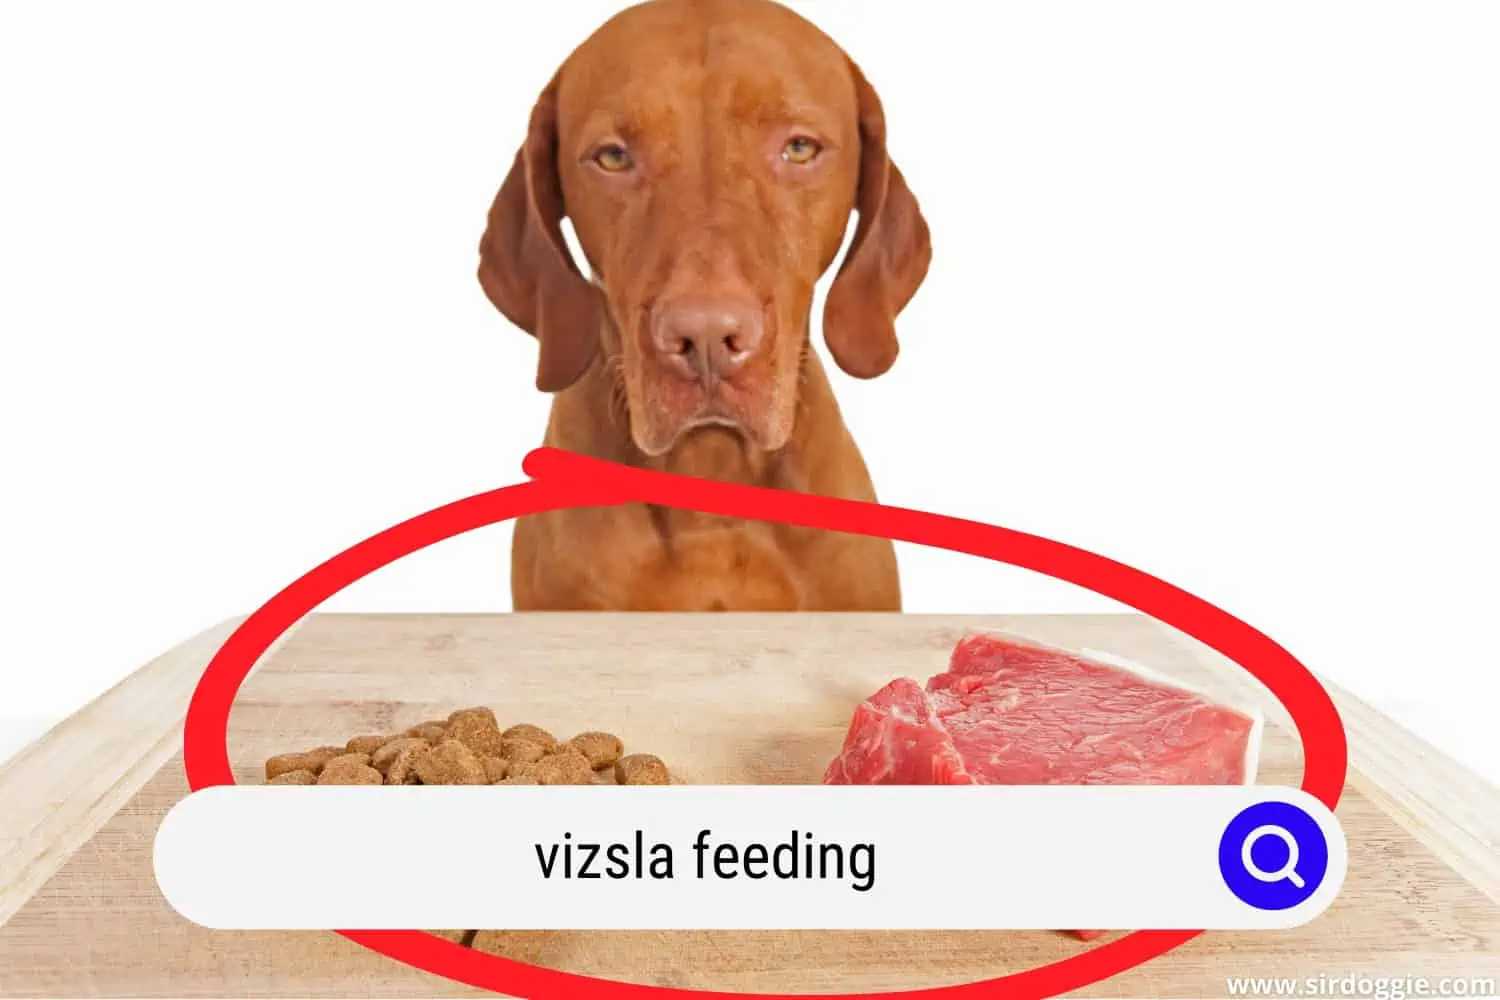 Feeding Vizsla dog a meat and kibble